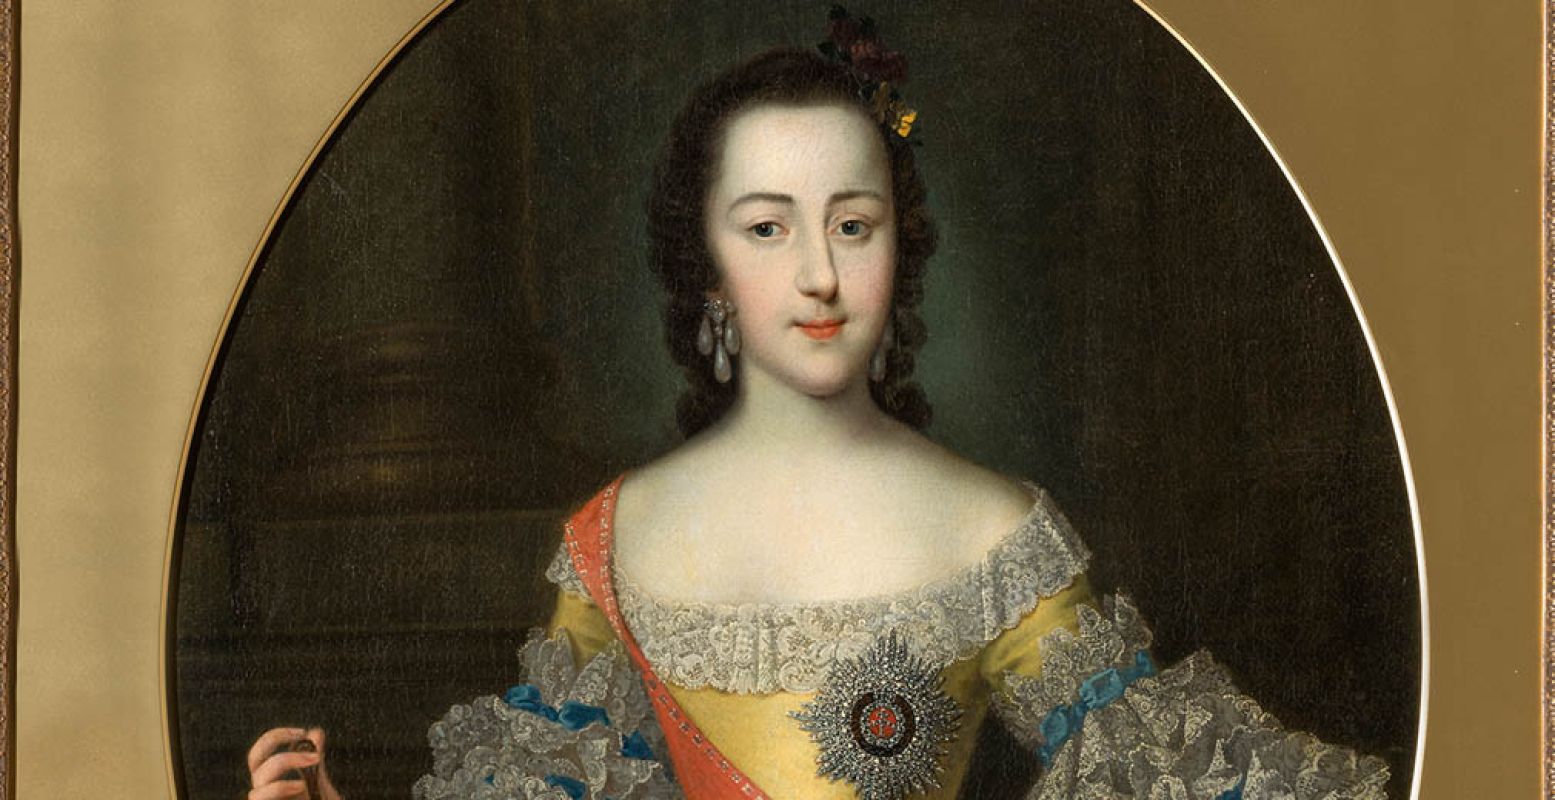 Foto: Georg Christoph Grooth, Portret van grootvorstin Catharina Aleksejevna, 1745â€“46 © State Hermitage Museum, St Petersburg.